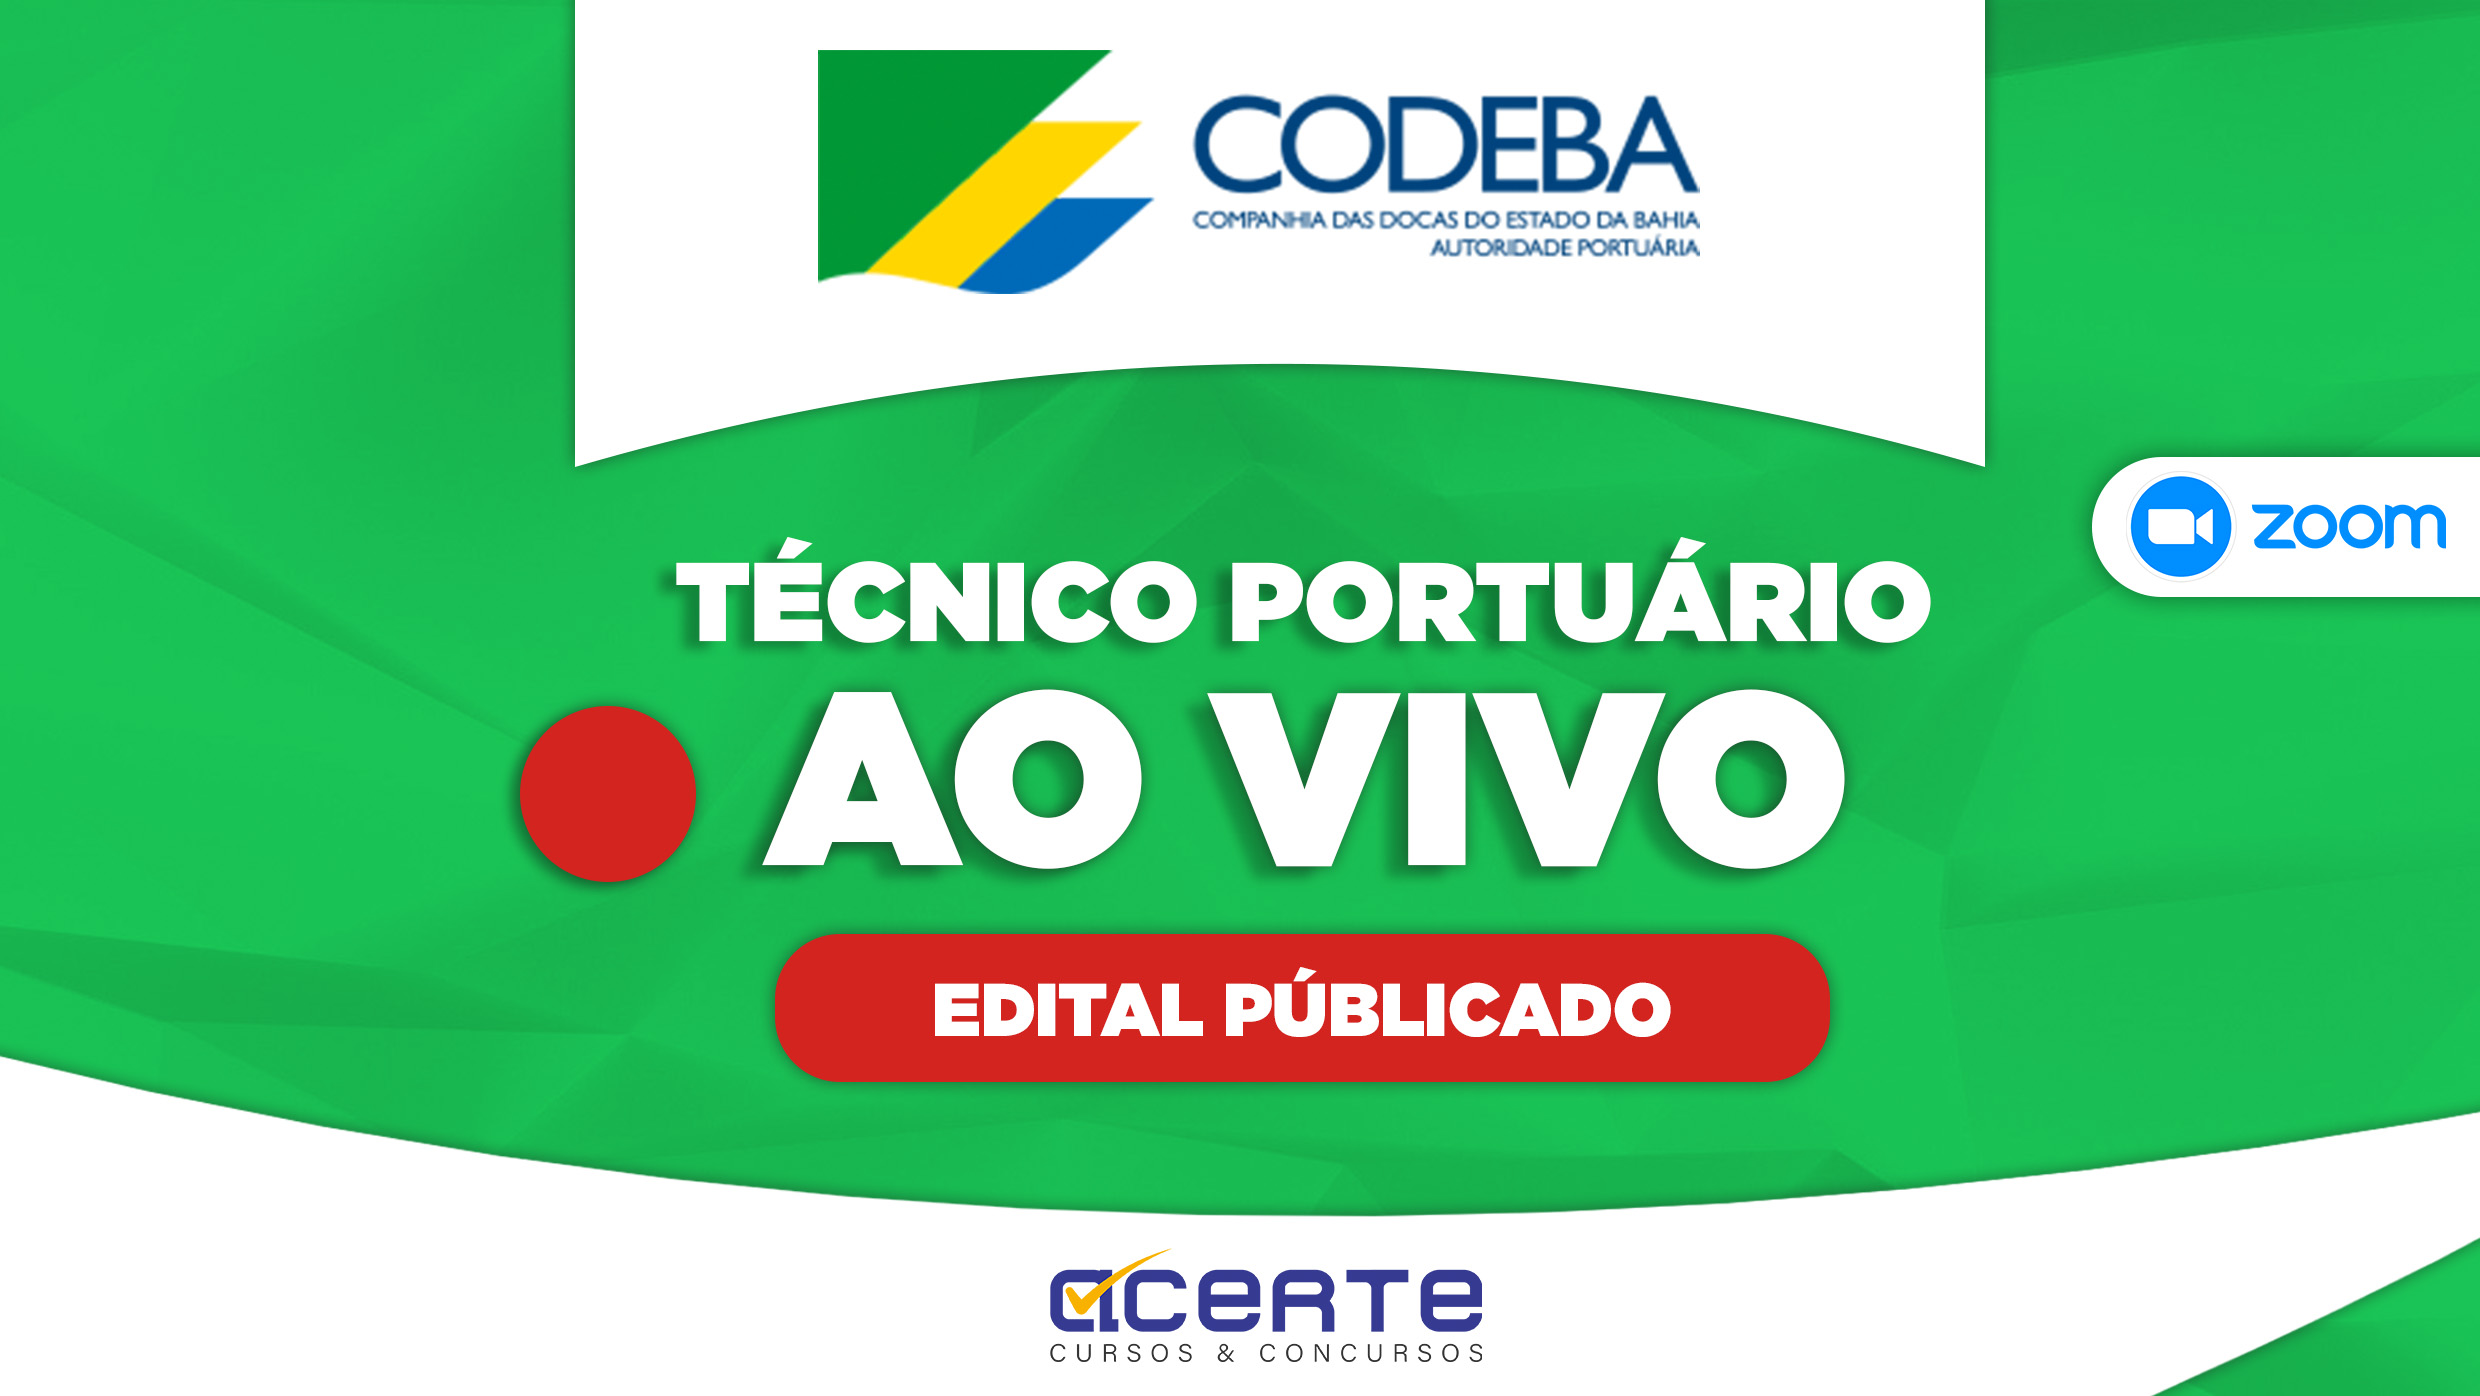 CODEBA - Técnico Portuário - AO VIVO - Edital Publicado